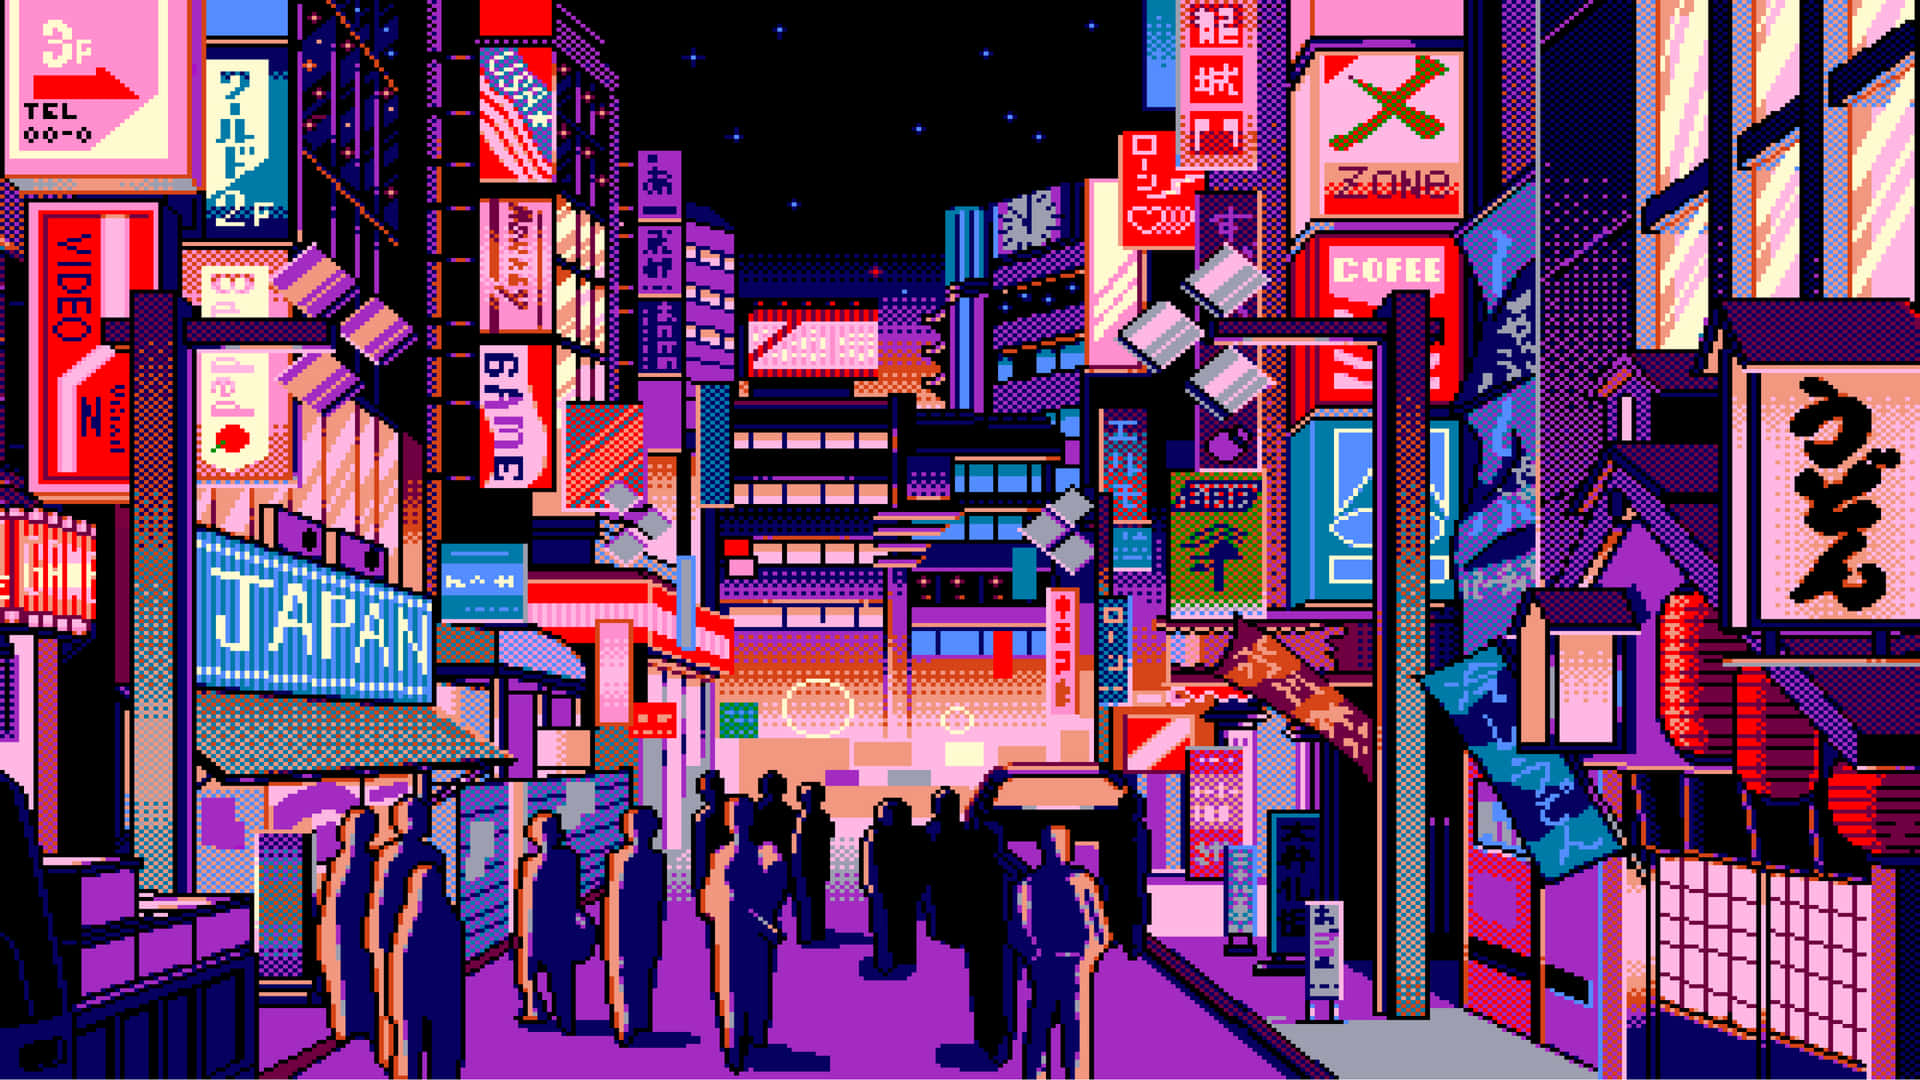 Komog Udforsk De Levende Farver I Harajuku. Wallpaper